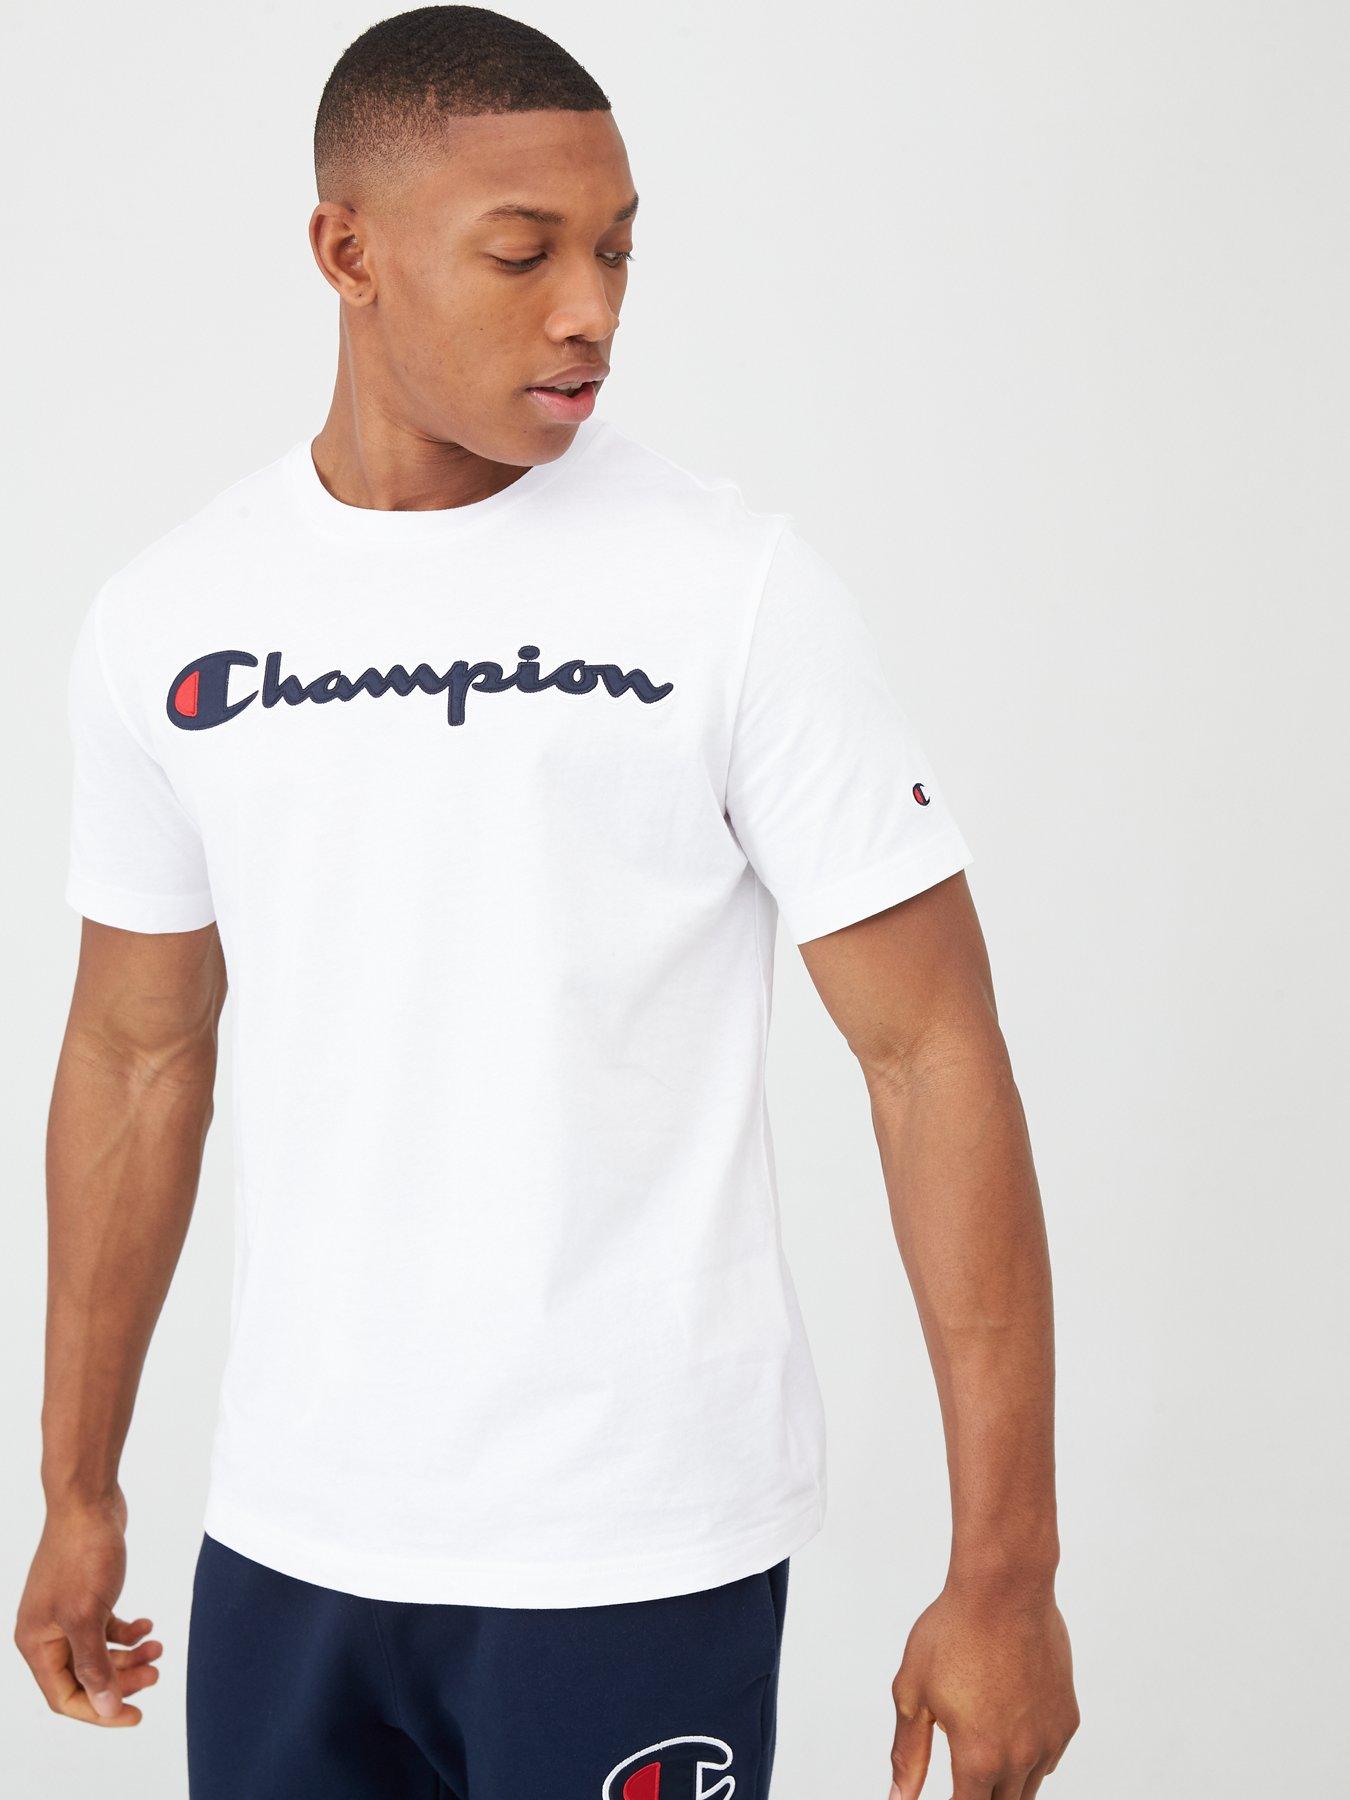 champion t shirt uk